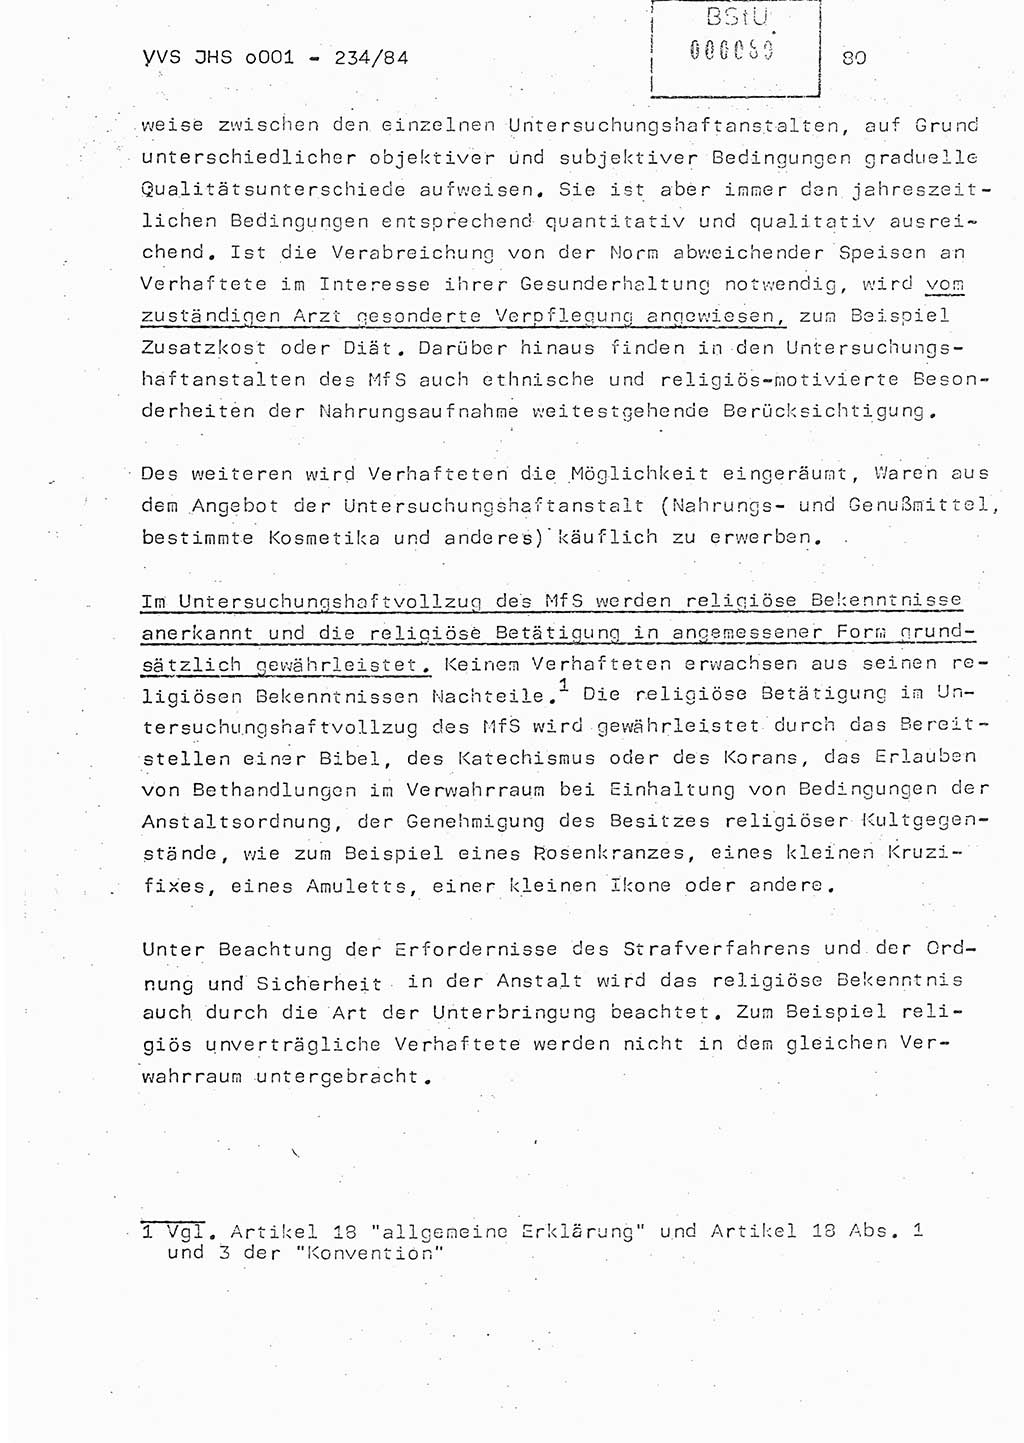 Dissertation Oberst Siegfried Rataizick (Abt. ⅩⅣ), Oberstleutnant Volkmar Heinz (Abt. ⅩⅣ), Oberstleutnant Werner Stein (HA Ⅸ), Hauptmann Heinz Conrad (JHS), Ministerium für Staatssicherheit (MfS) [Deutsche Demokratische Republik (DDR)], Juristische Hochschule (JHS), Vertrauliche Verschlußsache (VVS) o001-234/84, Potsdam 1984, Seite 80 (Diss. MfS DDR JHS VVS o001-234/84 1984, S. 80)